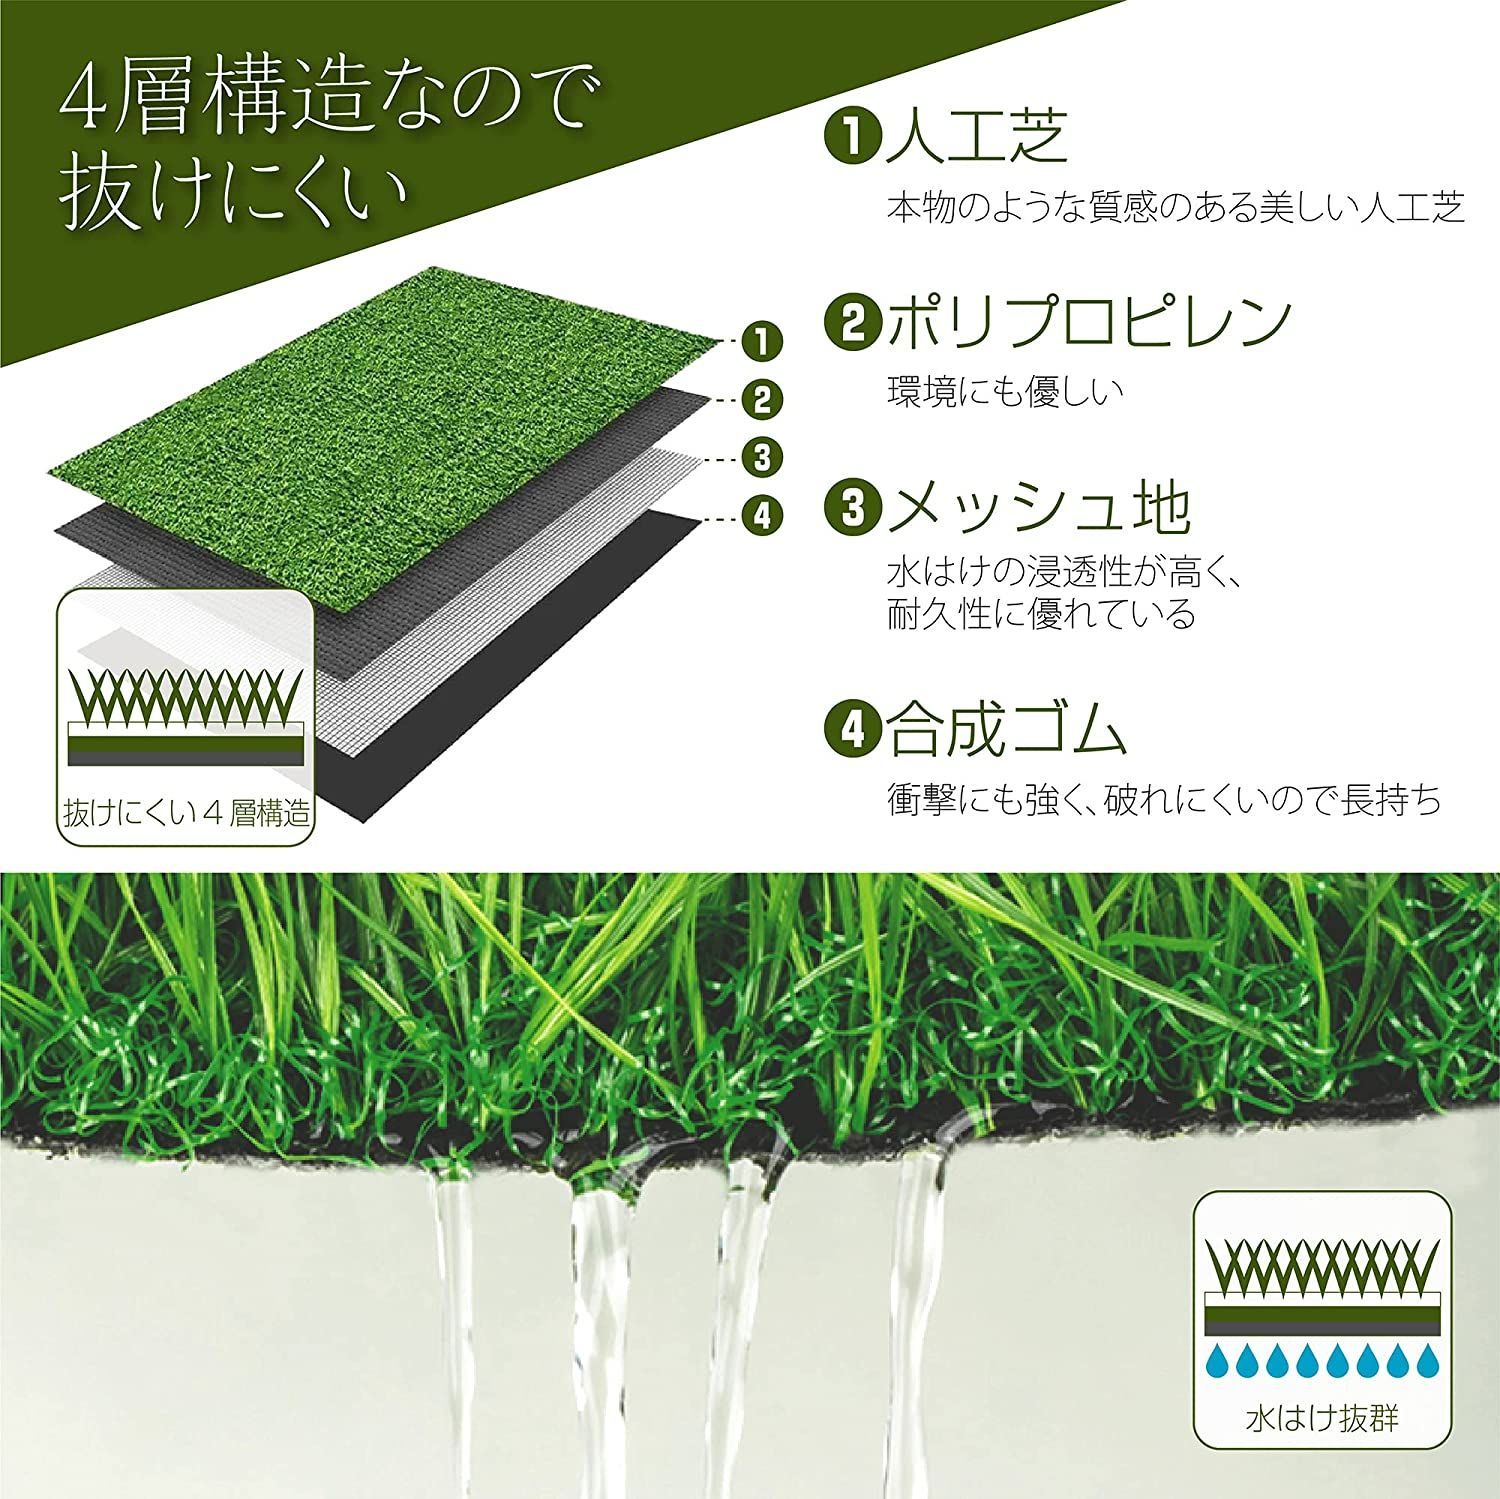 人工芝 1m×10m 庭 芝丈35mm  密度2倍 高耐久 固定ピン付572